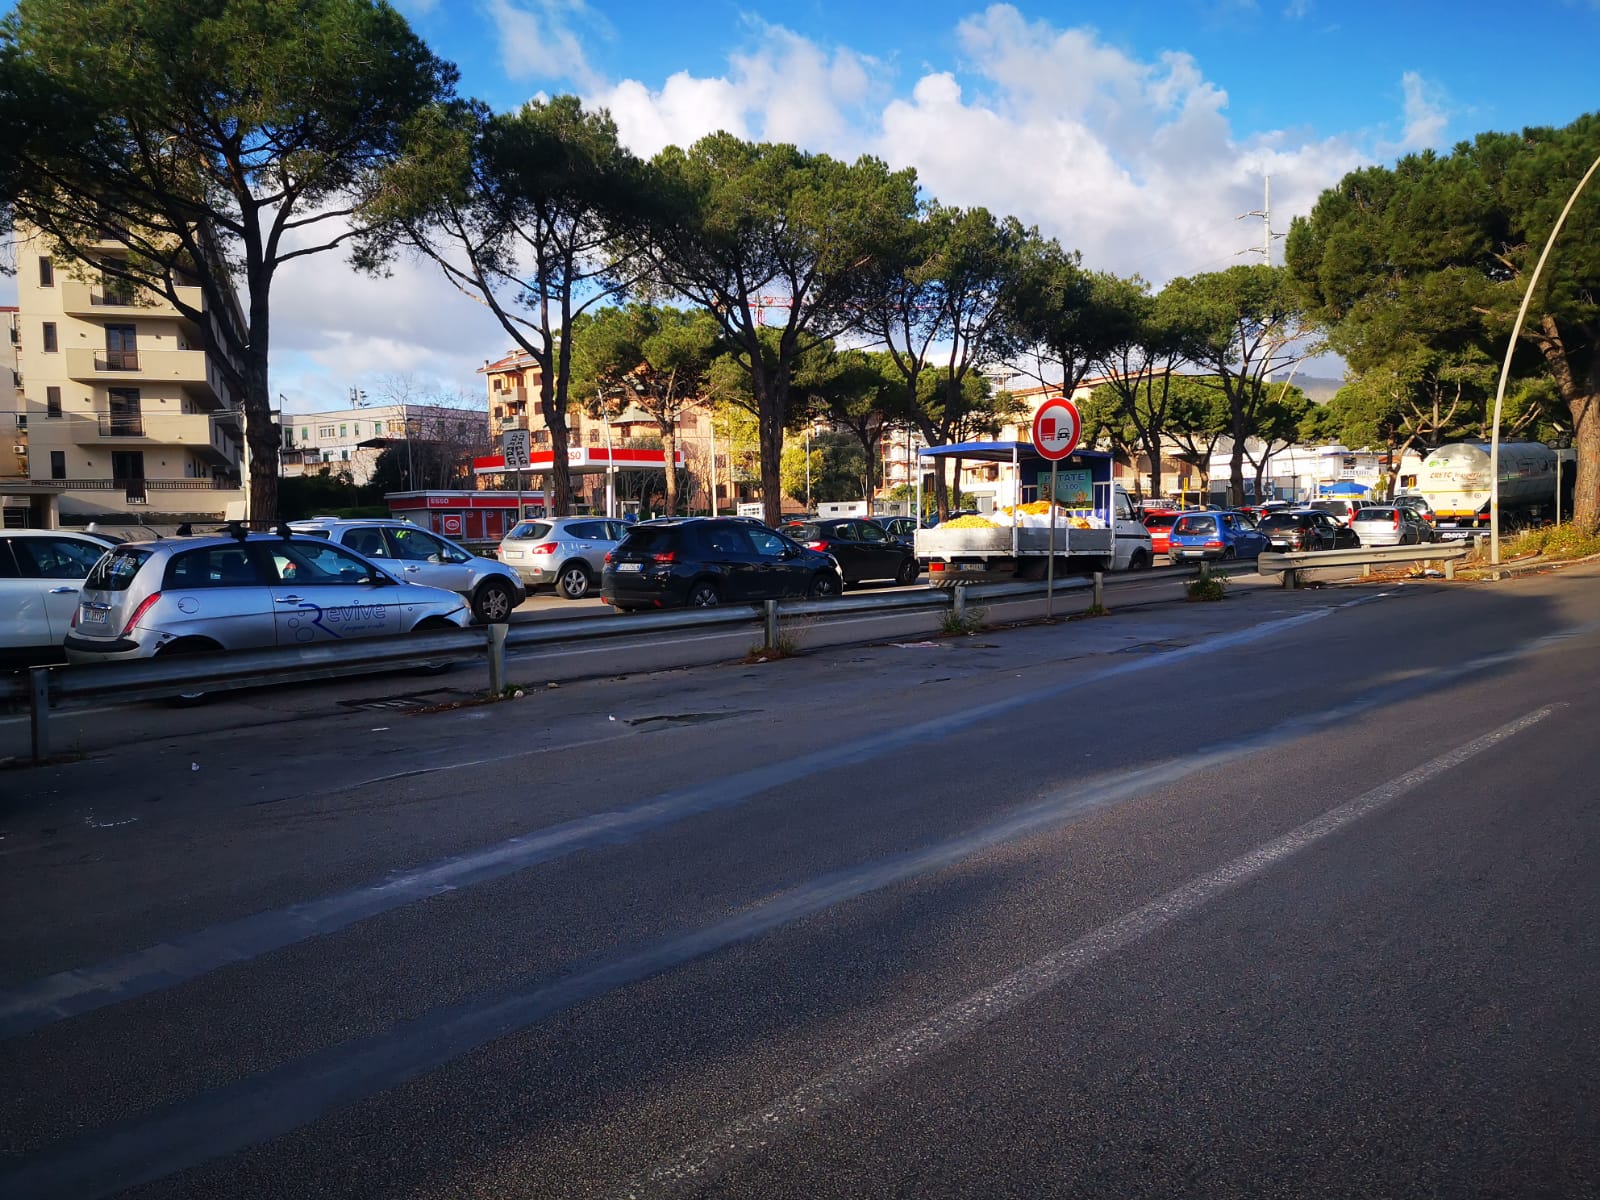 "Il traffico in zona Oreto è diventato insostenibile - spiega il capogruppo della Lega a Palermo Igor Gelarda -. Il ponte Oreto è sovraccarico di auto,